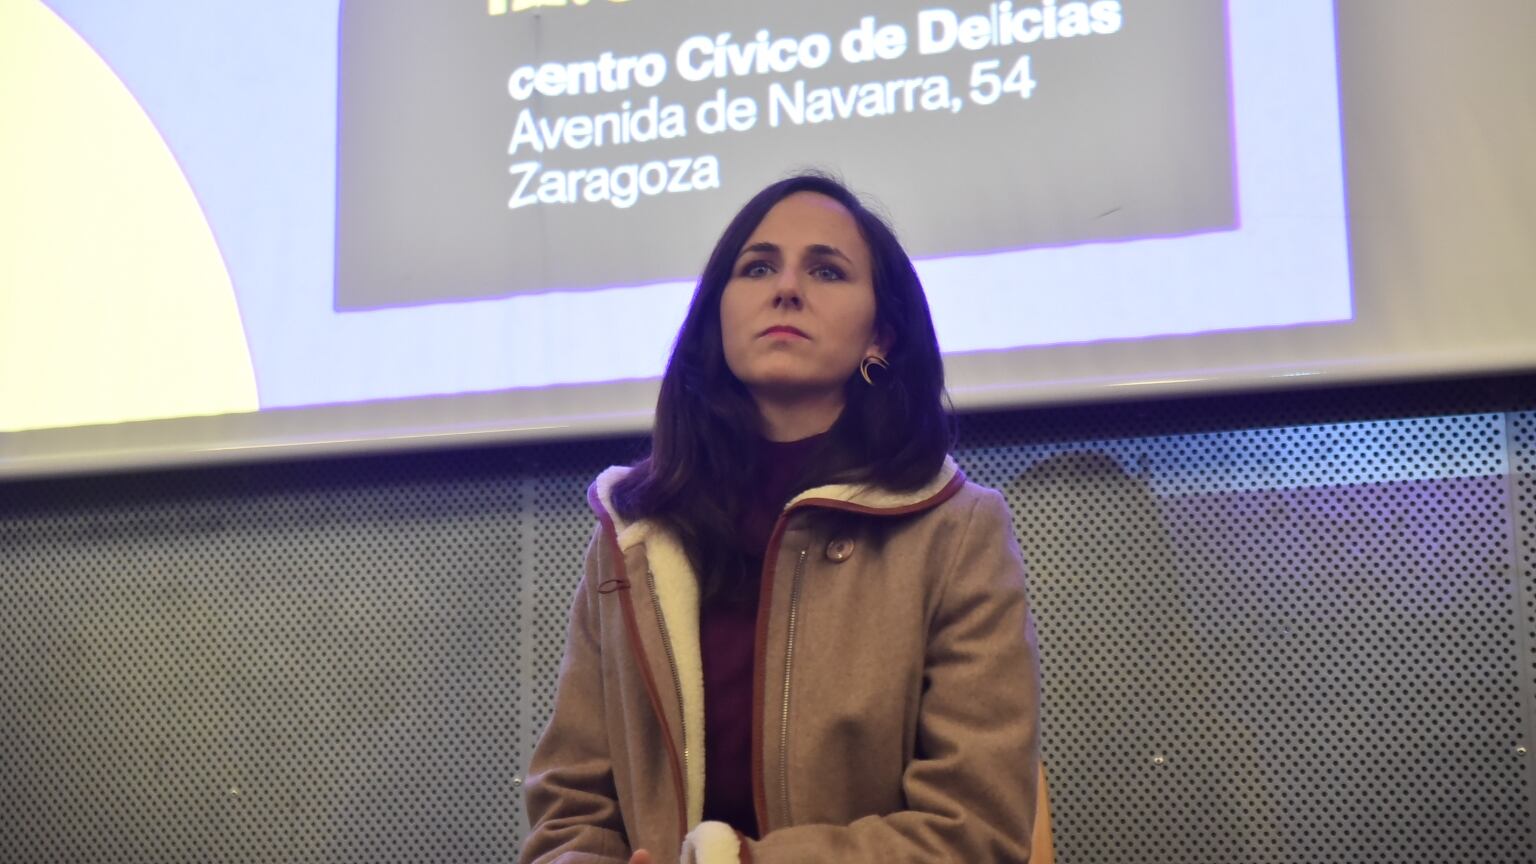 La líder de Podemos, Ione Belarra, durante un encuentro con militantes el sábado en Zaragoza.